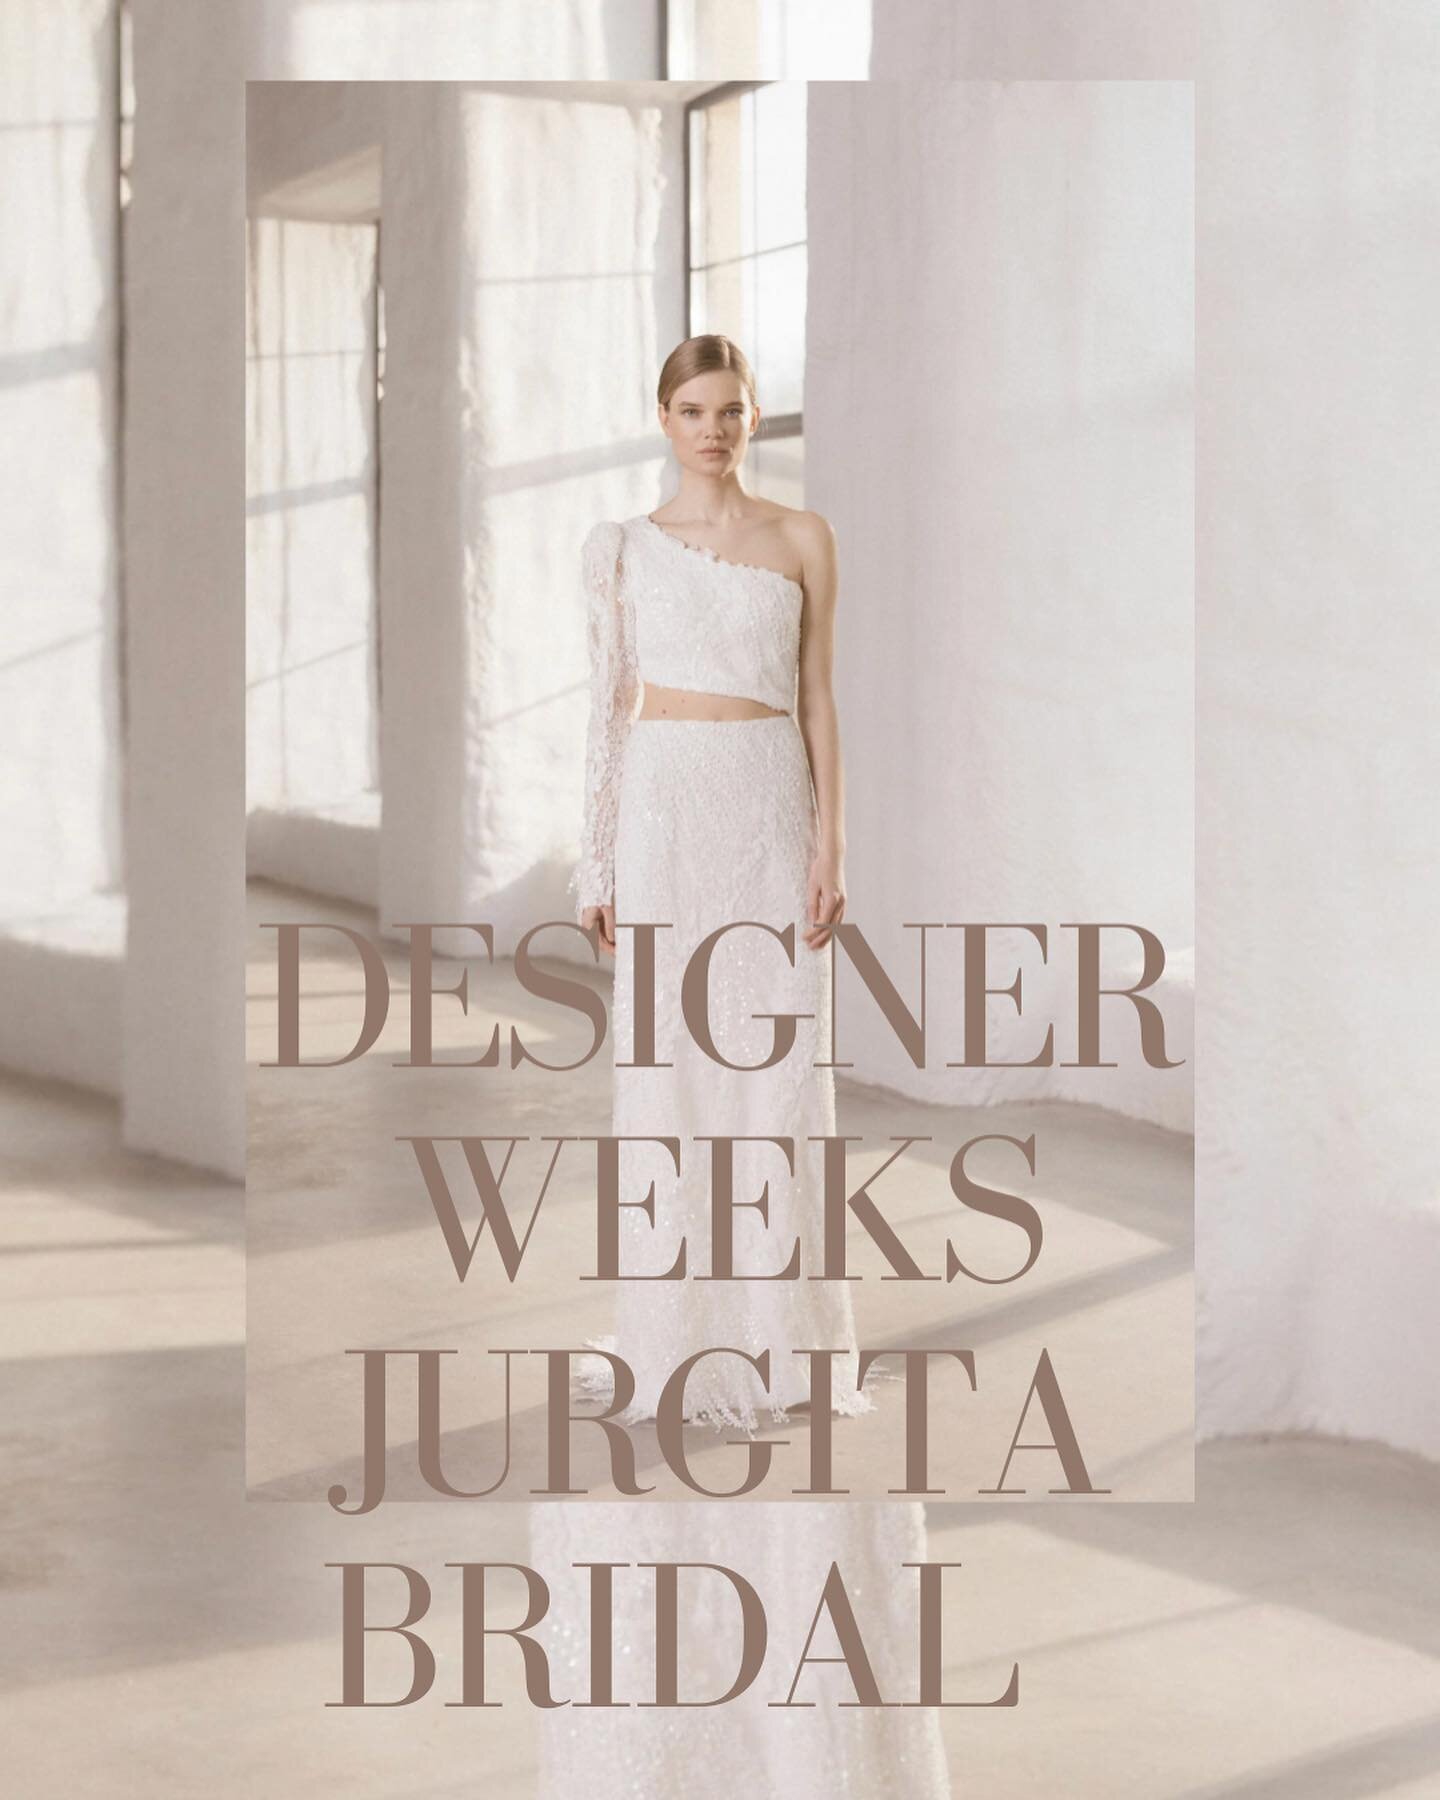 Designer Weeks ✨ 01.09 - 18.09 

Buche jetzt deinen Termin f&uuml;r unser September Special mit @jurgitabridal 

In den 2 Wochen habt ihr die M&ouml;glichkeit die ganz neue Kollektion einer unserer Lieblingsdesingerin zu bestaunen und anzuprobieren. 